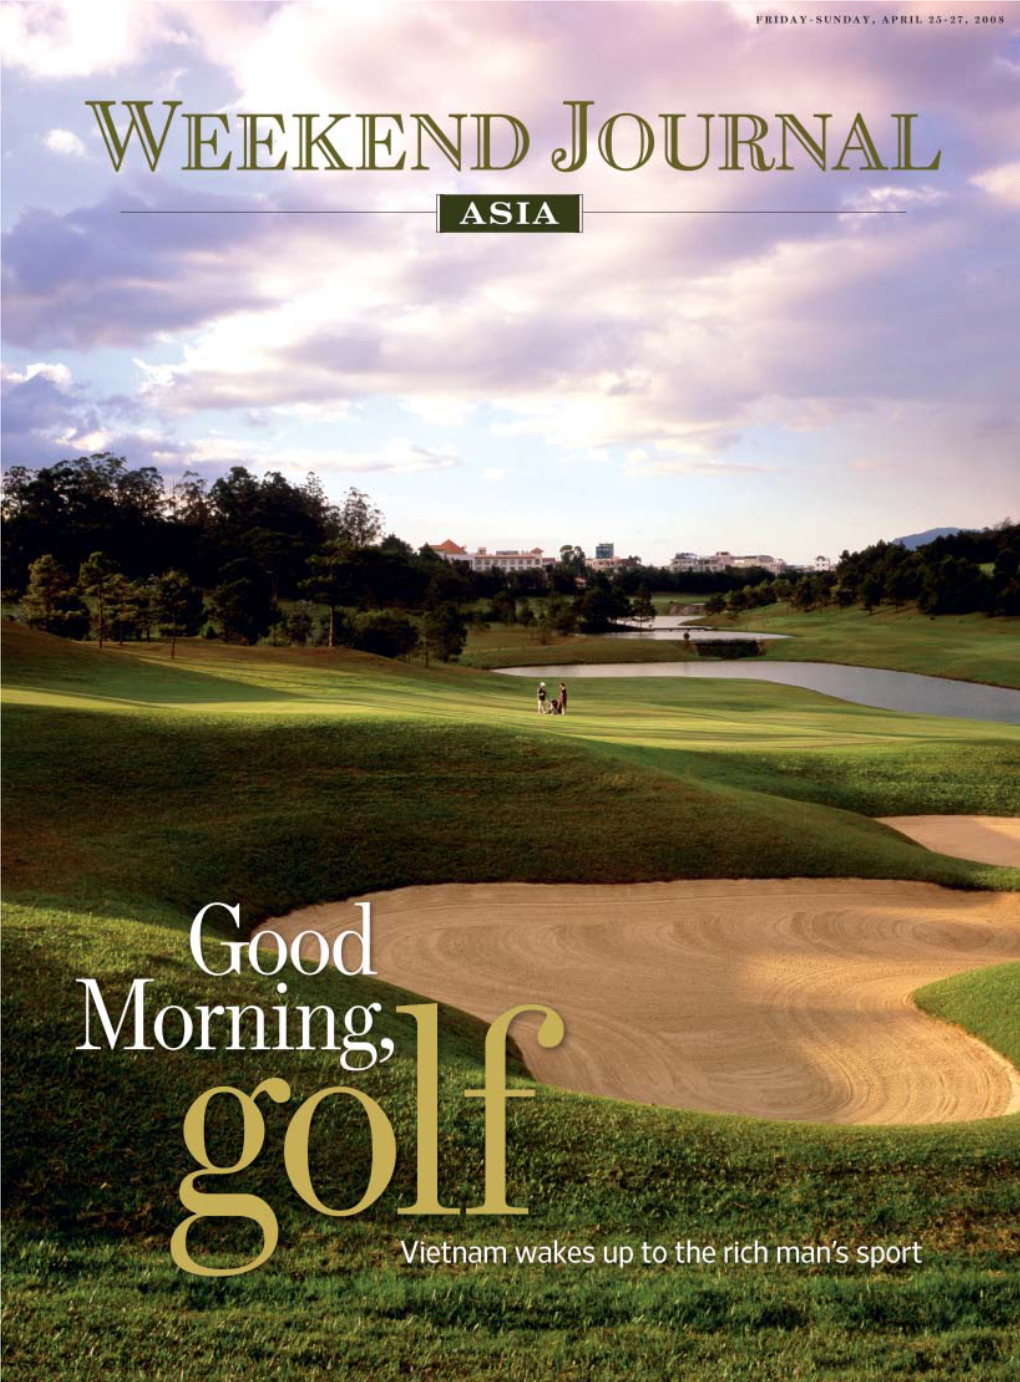 Weekend Journal Asia-Good Morning, Golf